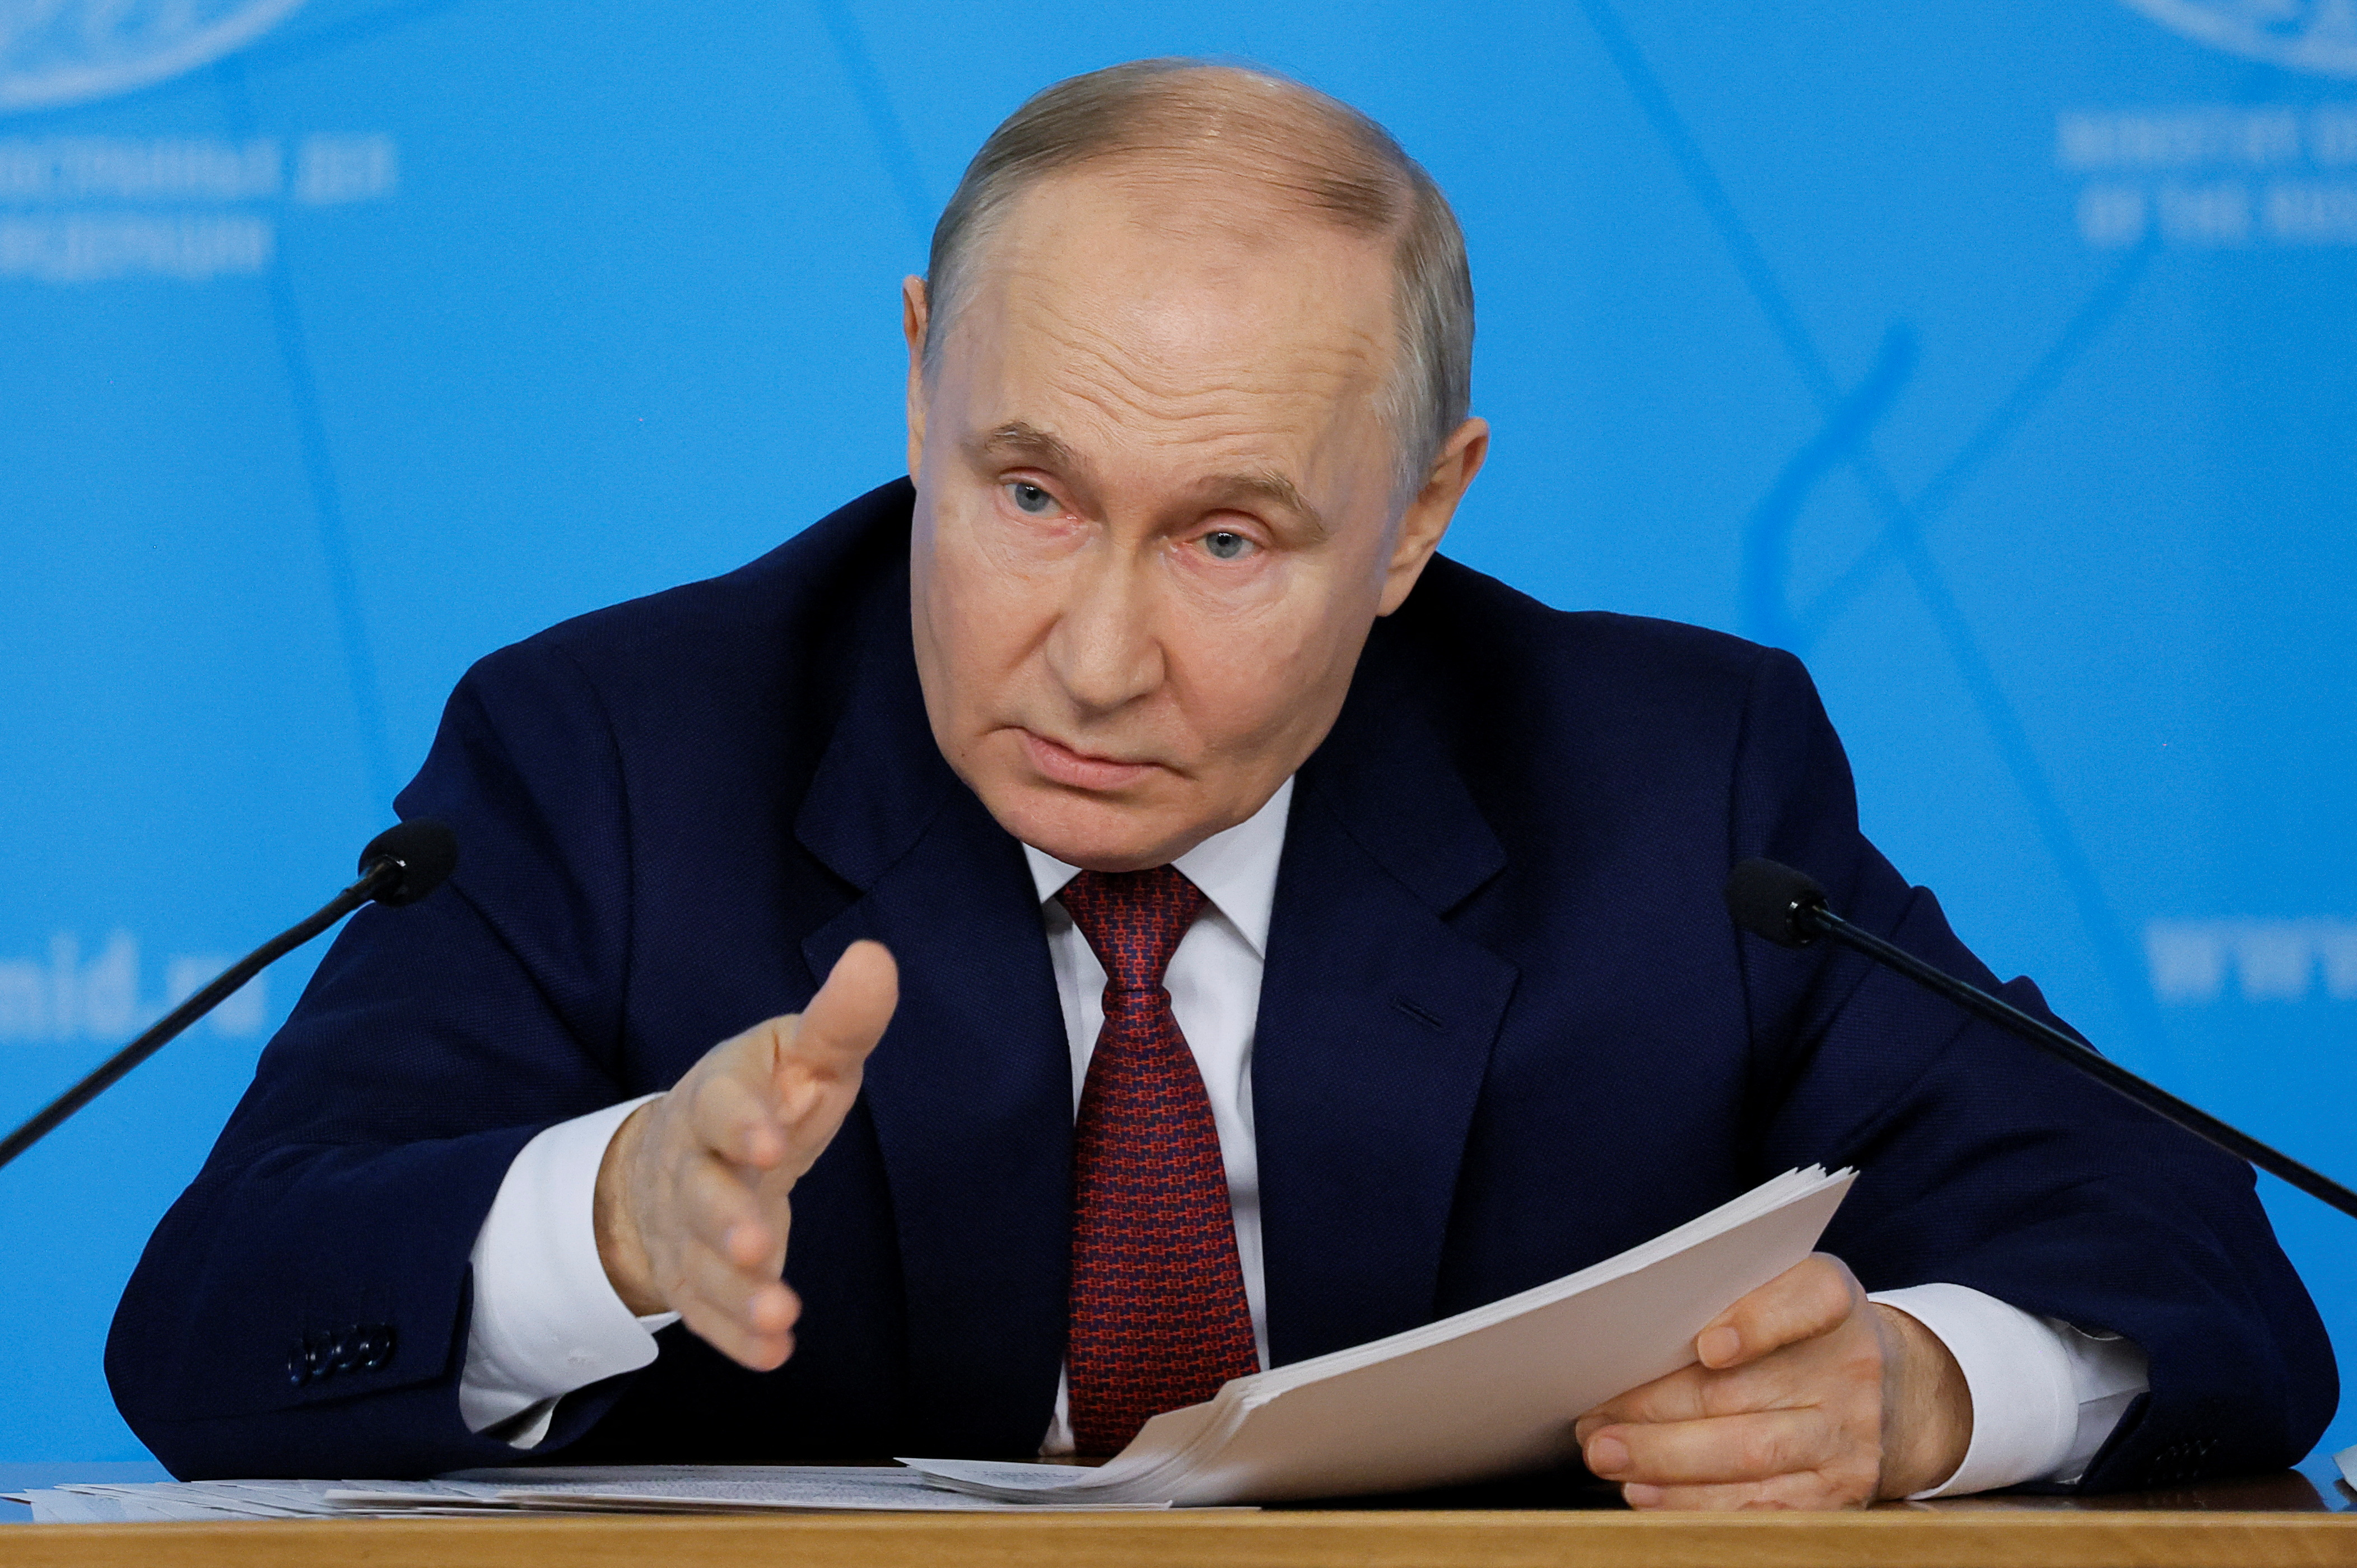 プーチン氏18日訪朝、24年ぶり 安保パートナーシップ協定署名か - ロイター (Reuters Japan)